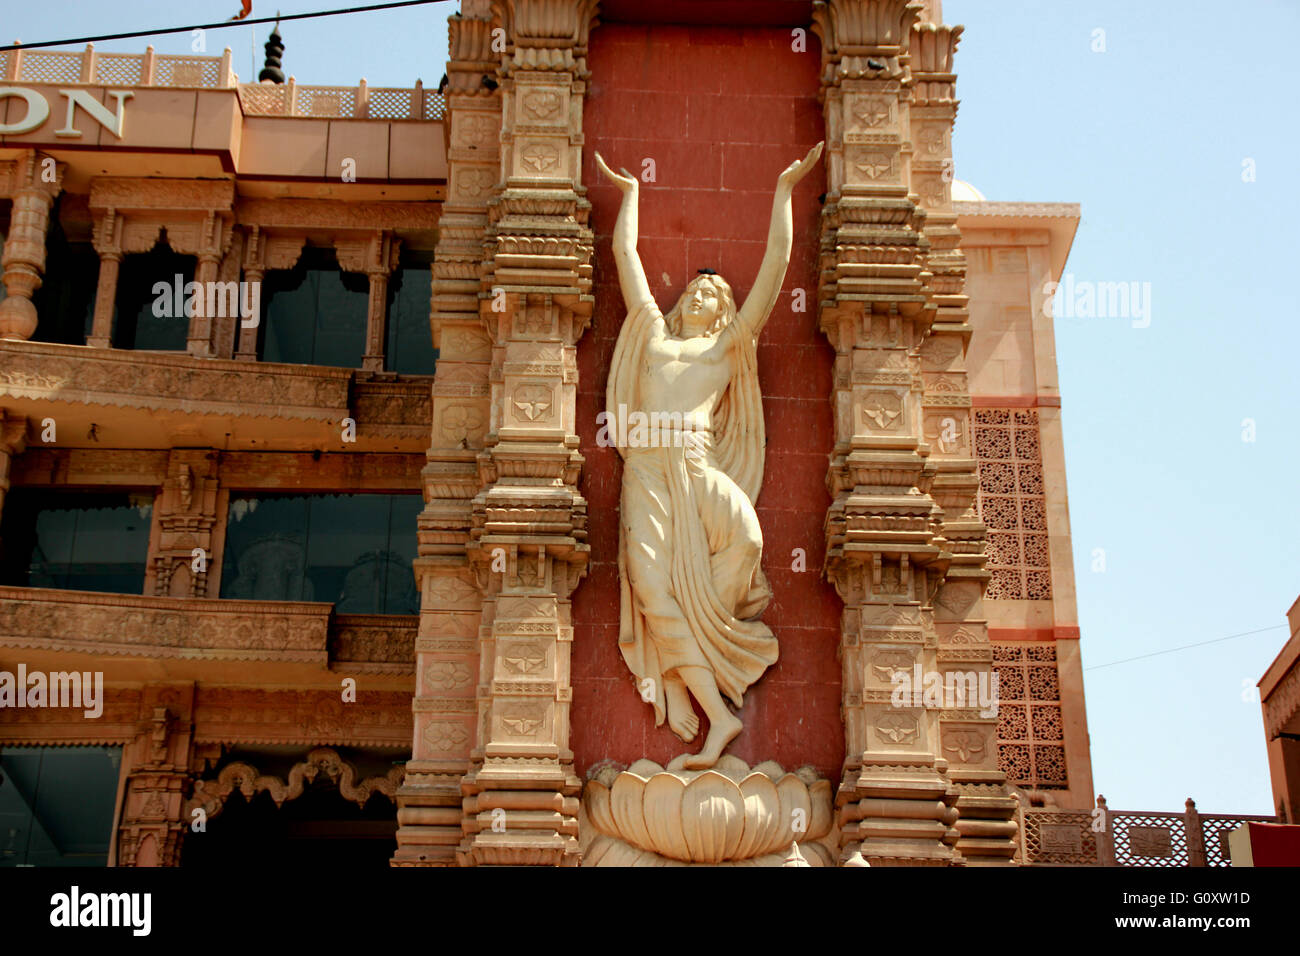 Temple ISKCON Noida, Uttar Pradesh, Inde, magnifique temple dédié au dieu Krishna avec chariot d'or sur plate-forme surélevée Banque D'Images